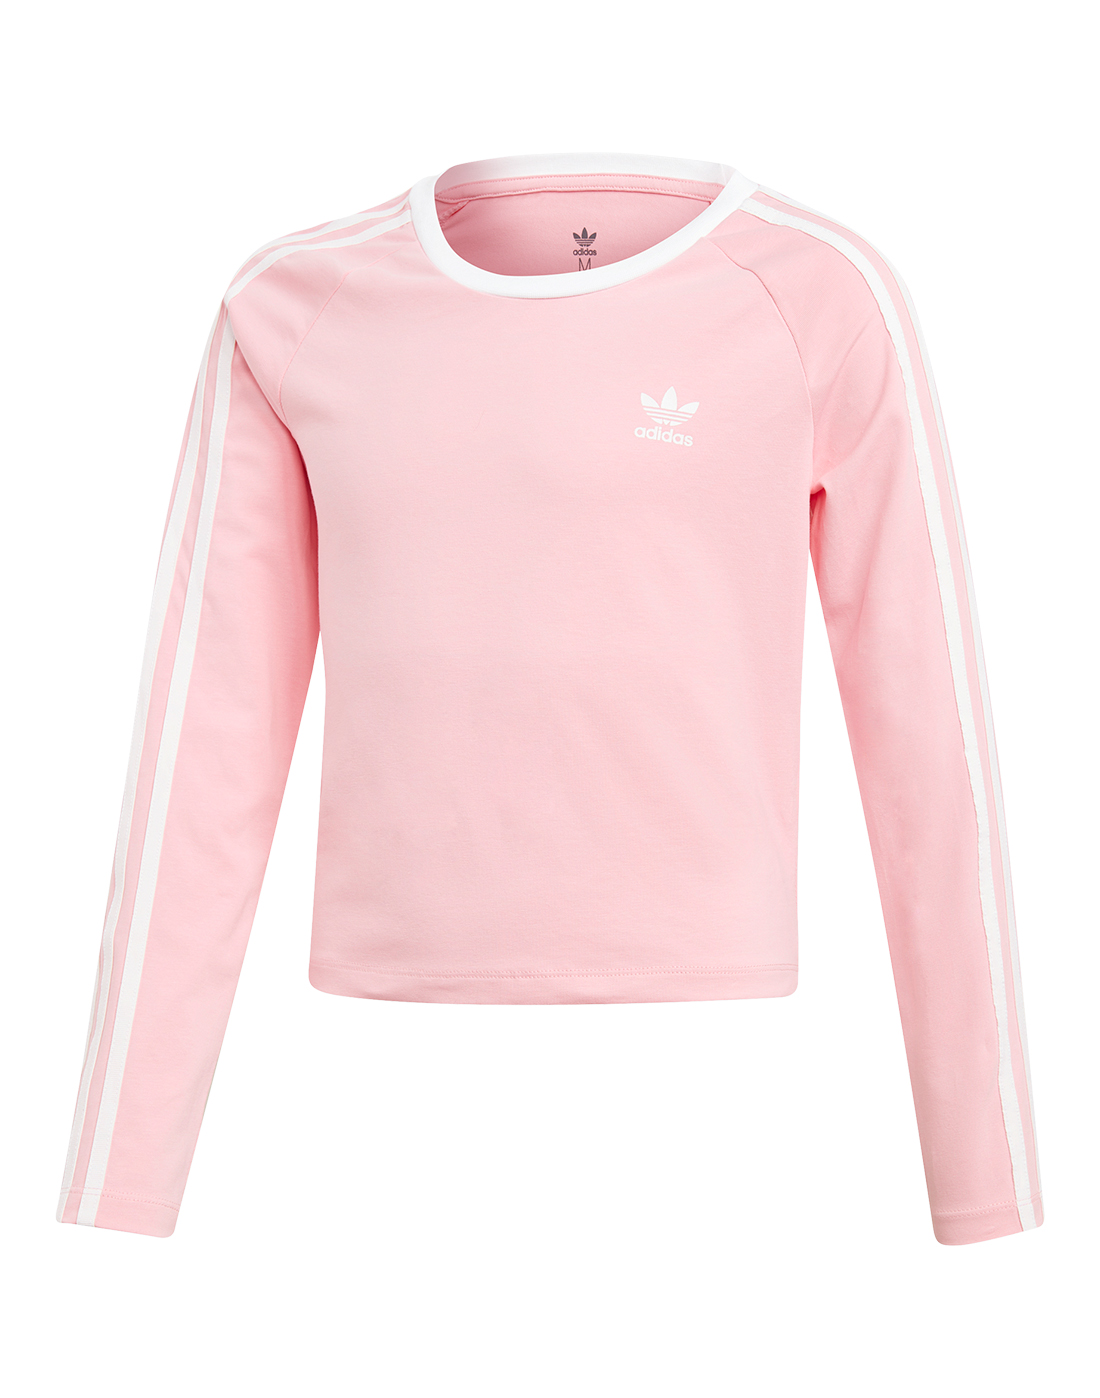 girls pink adidas top